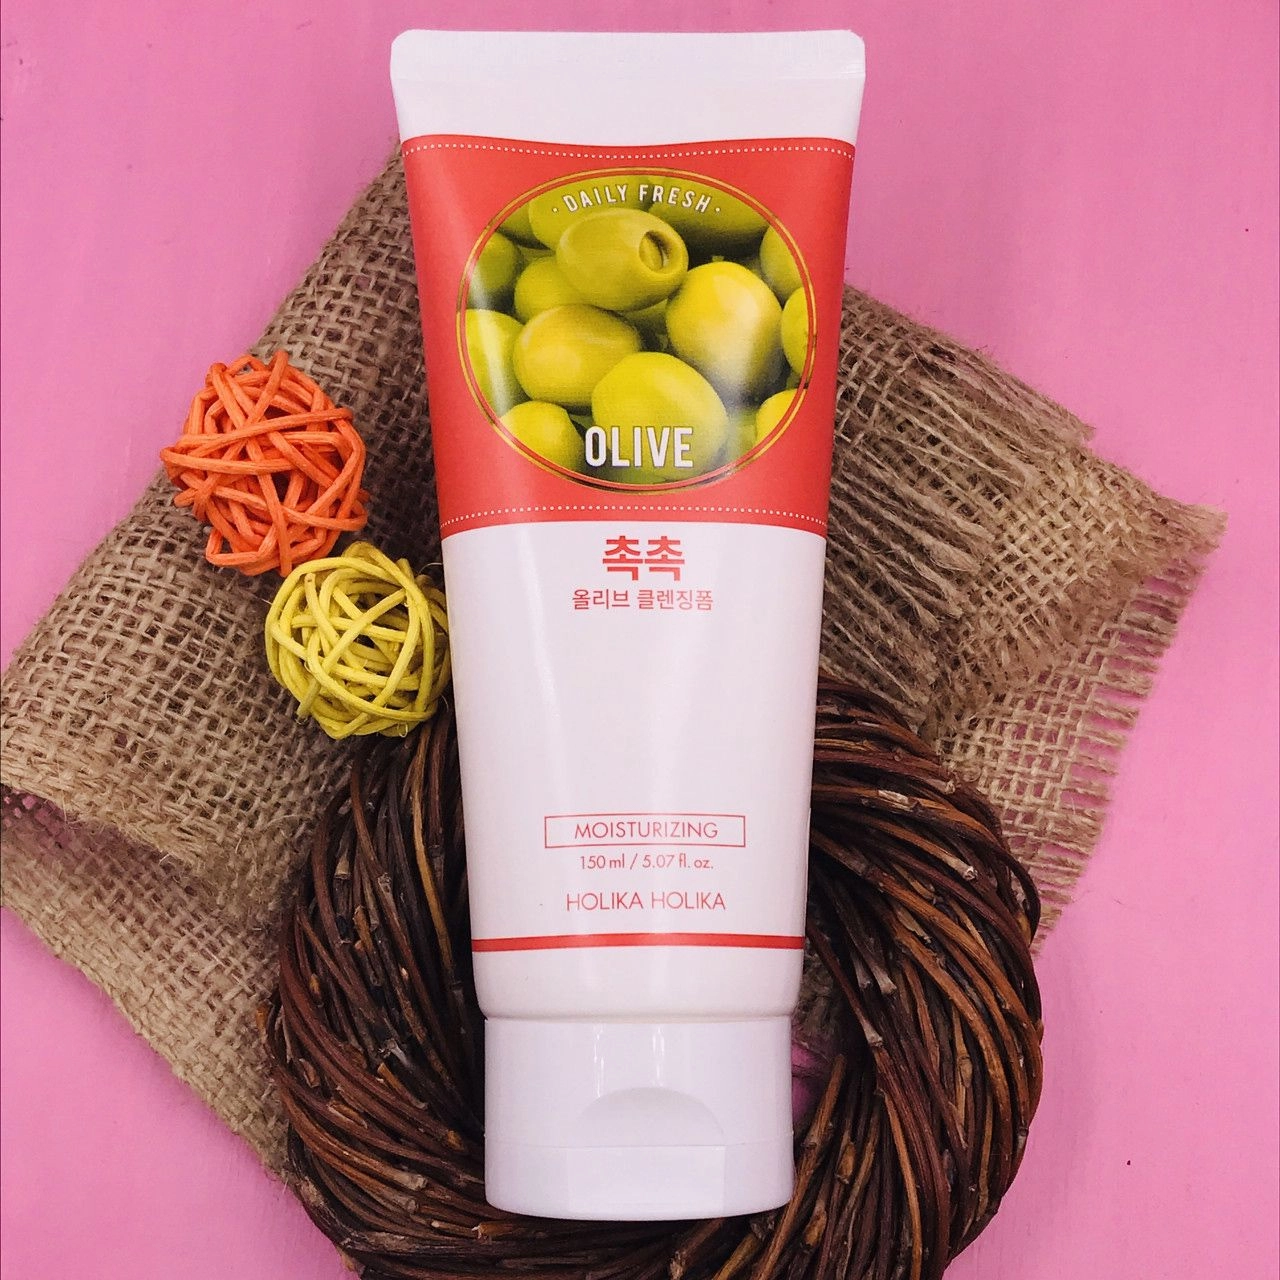 Holika Holika Увлажняющая очищающая пенка для умывания Daily Fresh Olive Cleansing Foam с экстрактом оливы, 150 мл - фото N2